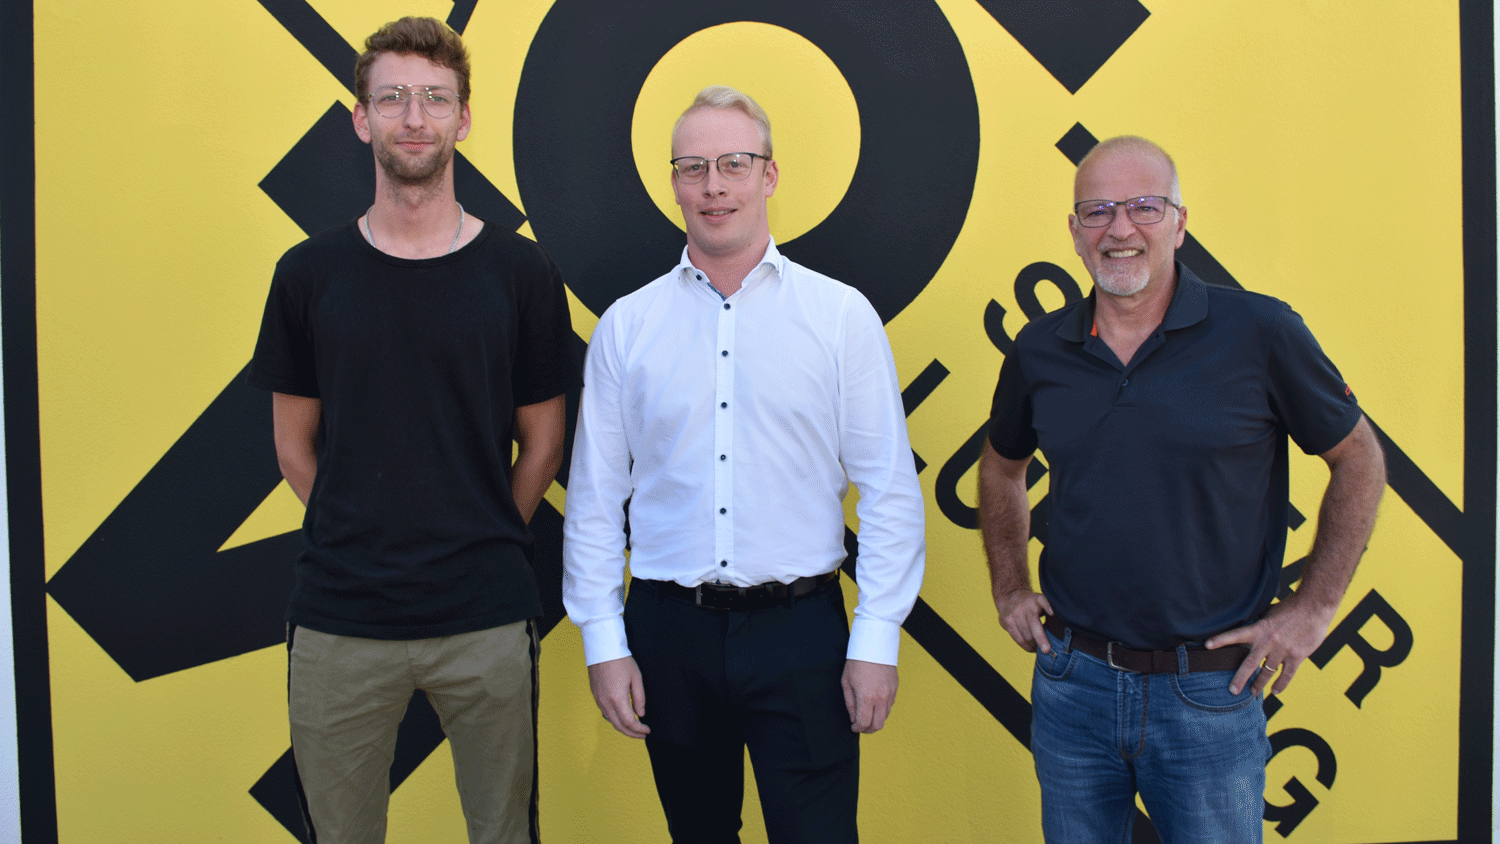 Bei der Firma Stolz wird die Lehre sehr gefördert. Konstrukteur-Lehrling Jakob Köll, technischer Leiter Mathias Auer und Lehrlingsausbilder Josef Rantner (v.l.).